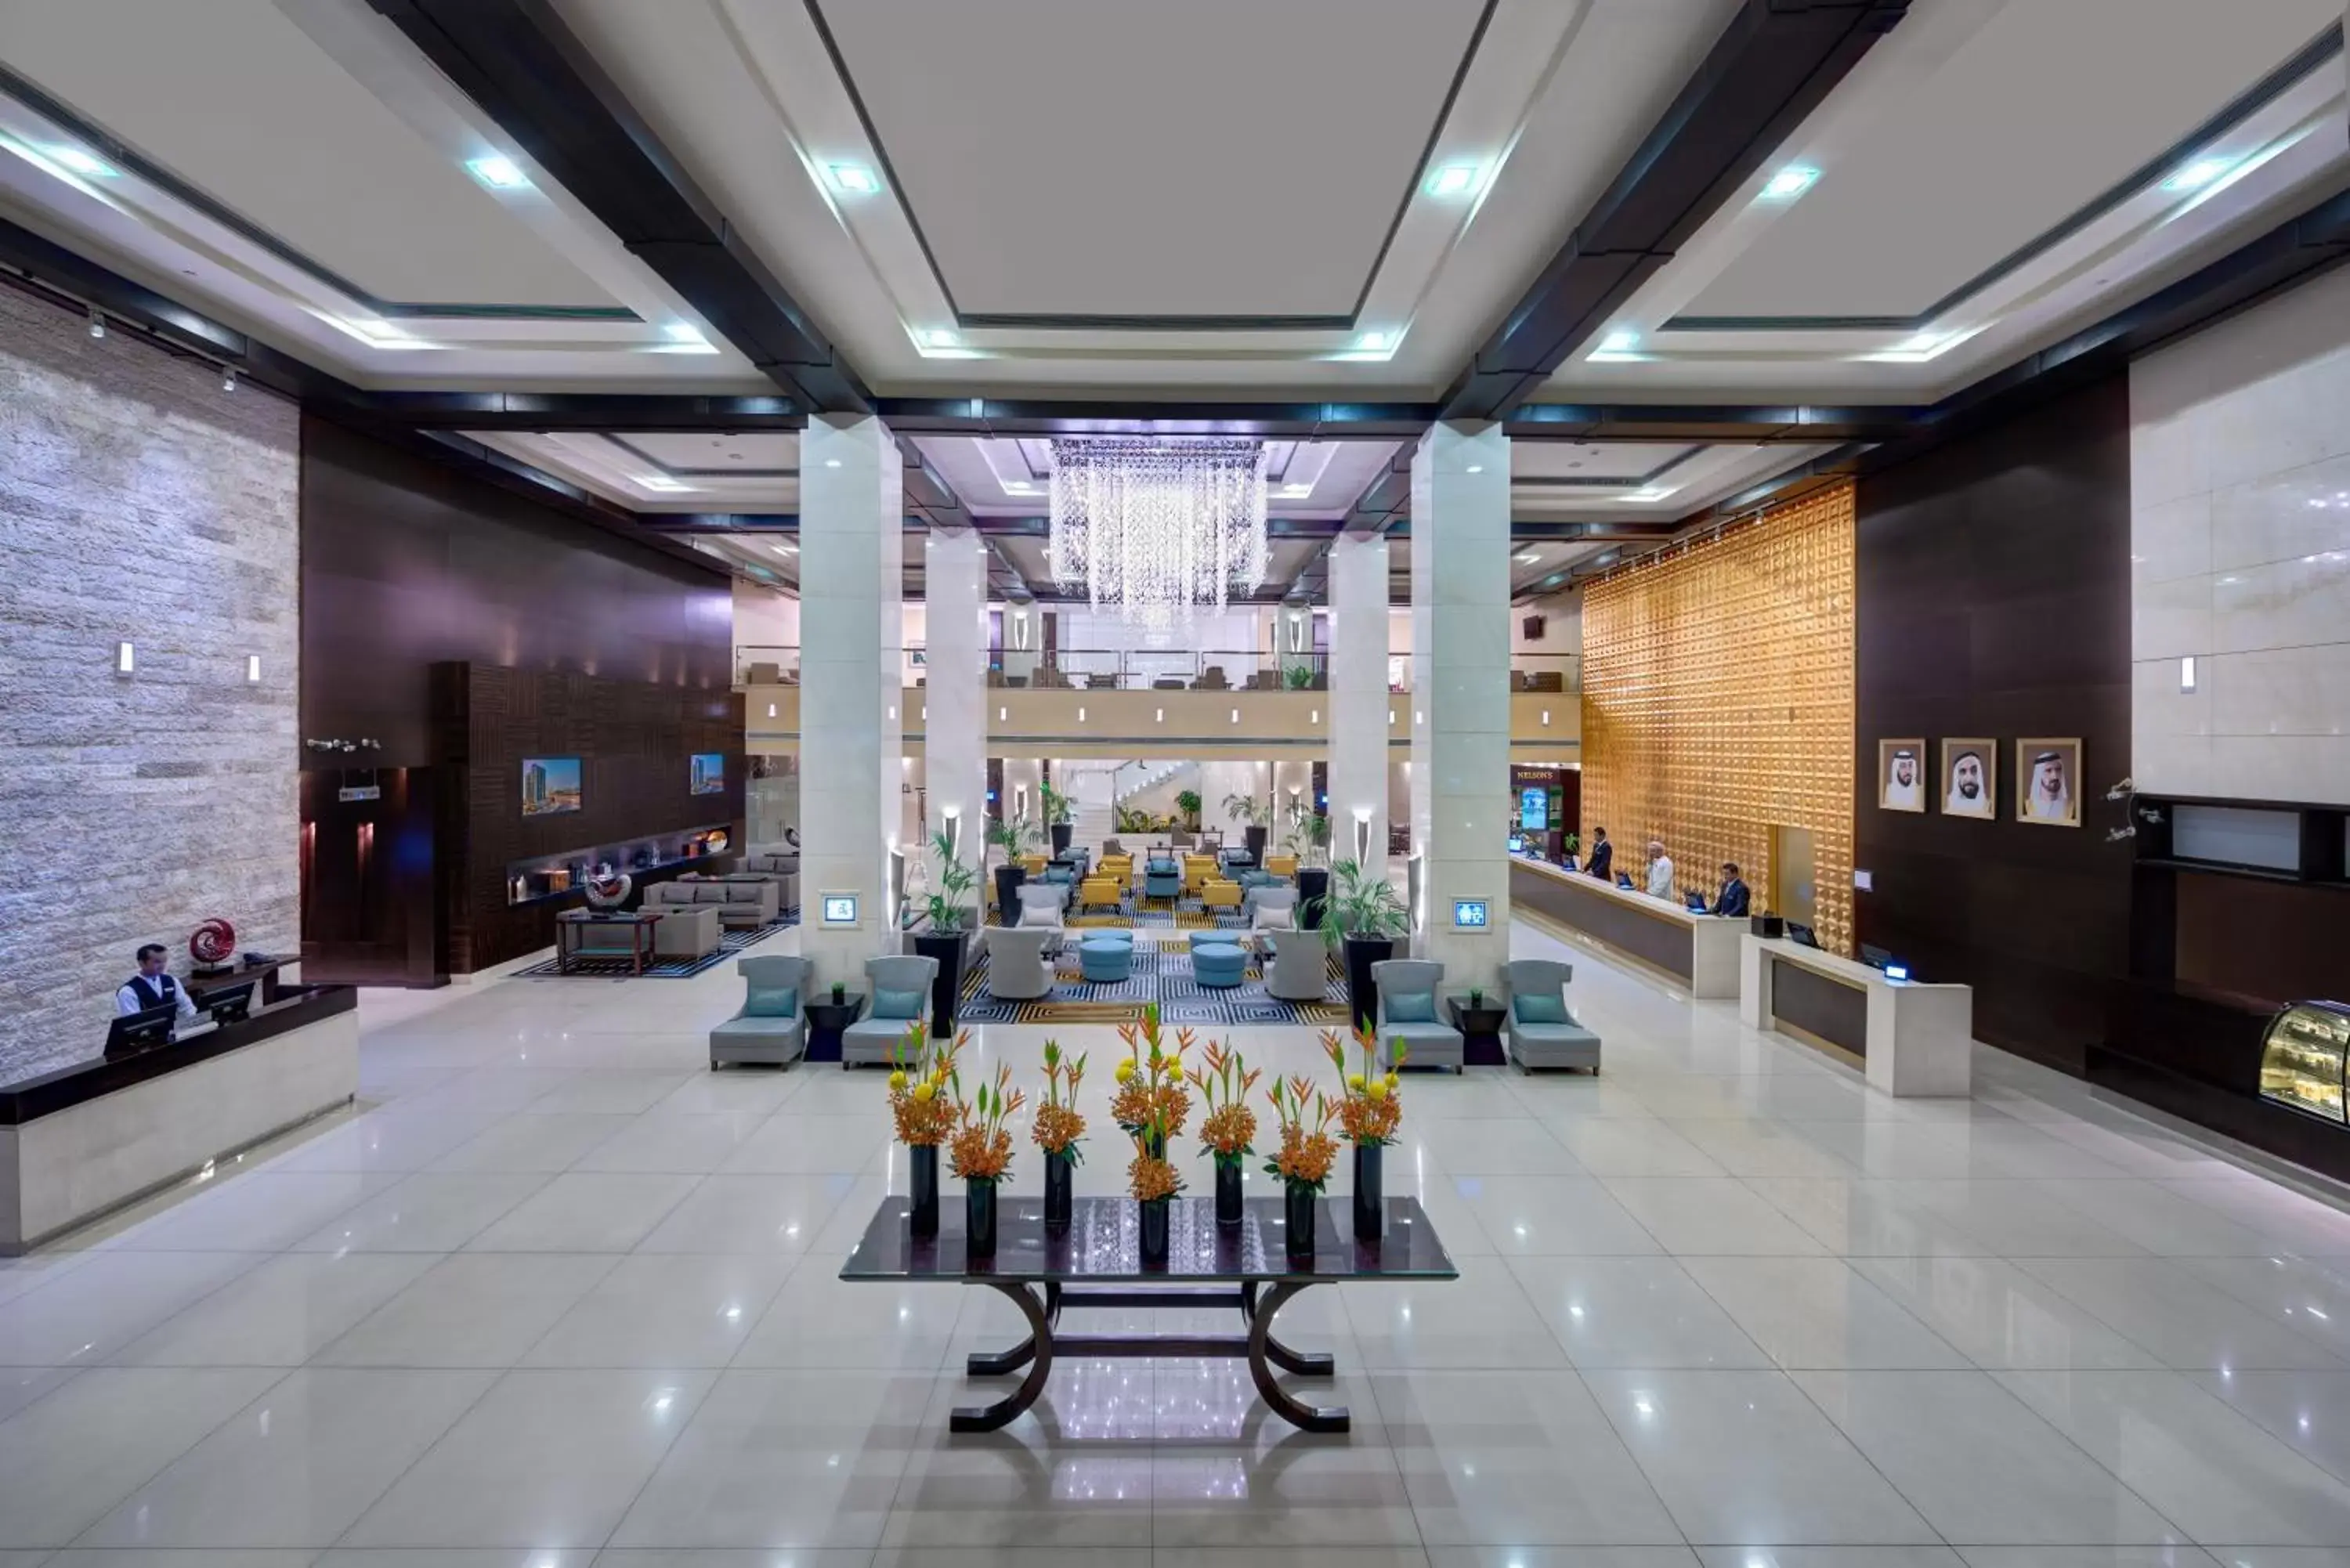 Lobby or reception in Media Rotana Dubai